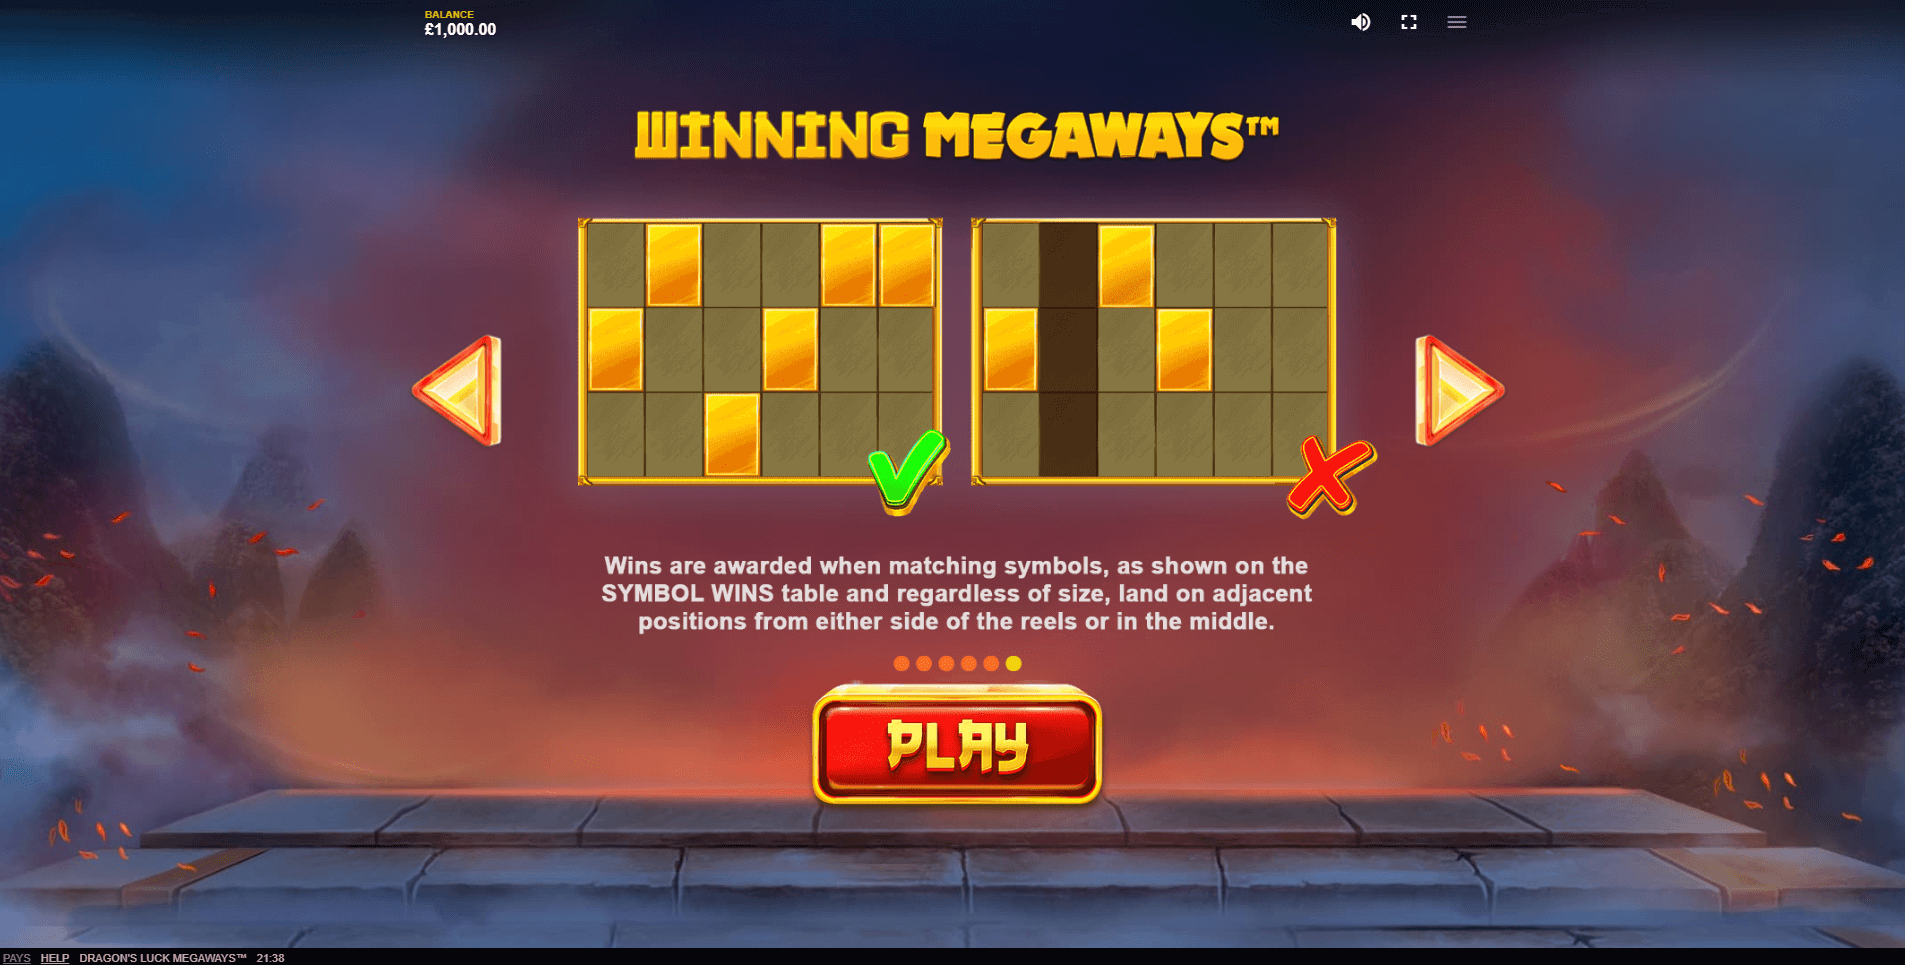 dragons luck megaways slot machine detail image 4